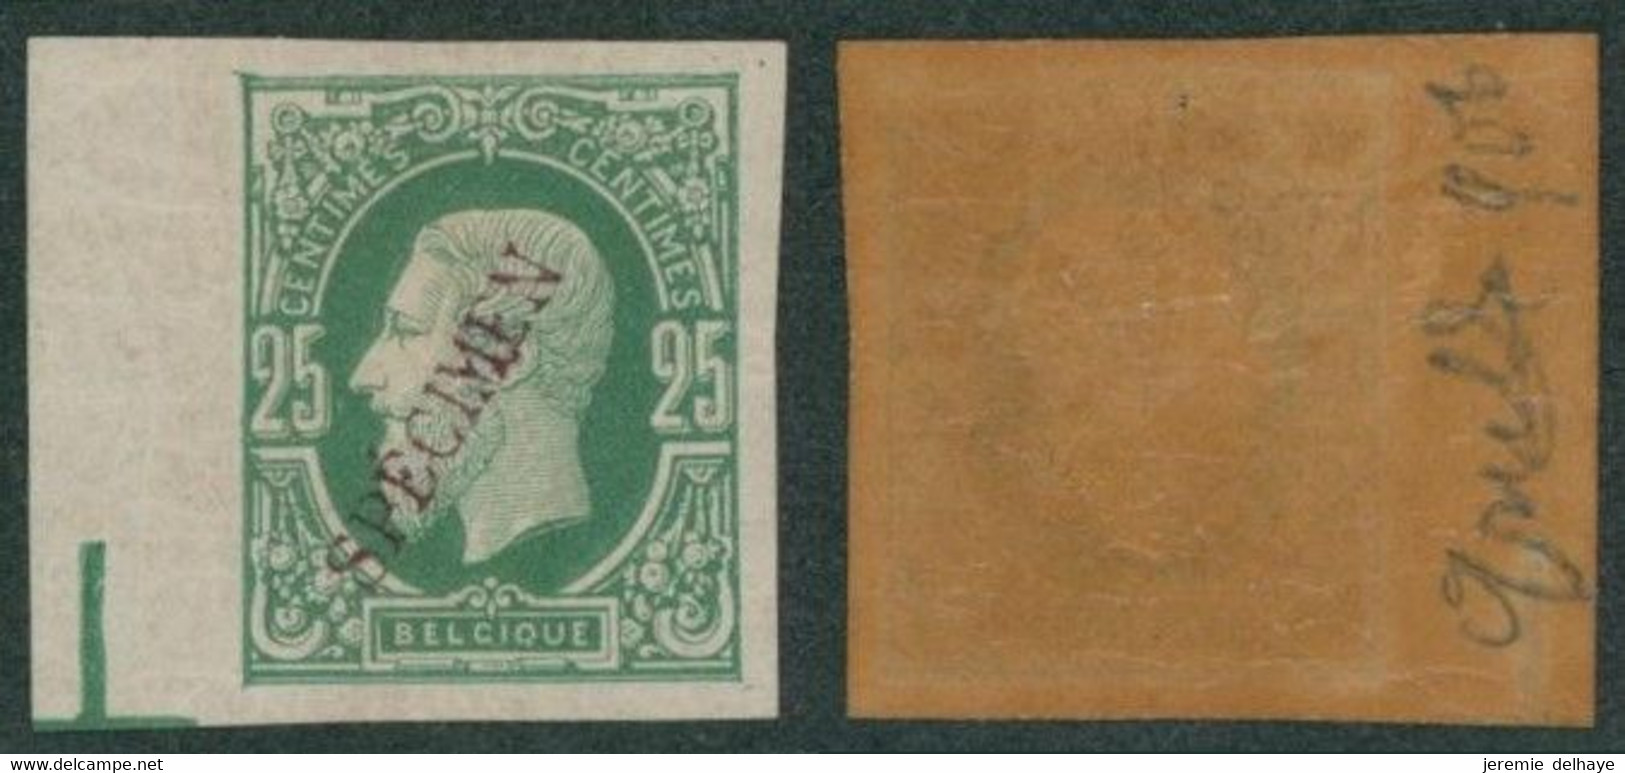 Essai De Couleur - émission 1869 çàd 25C En Vert Gommé + Surcharge SPECIMEN (violet) - Proofs & Reprints